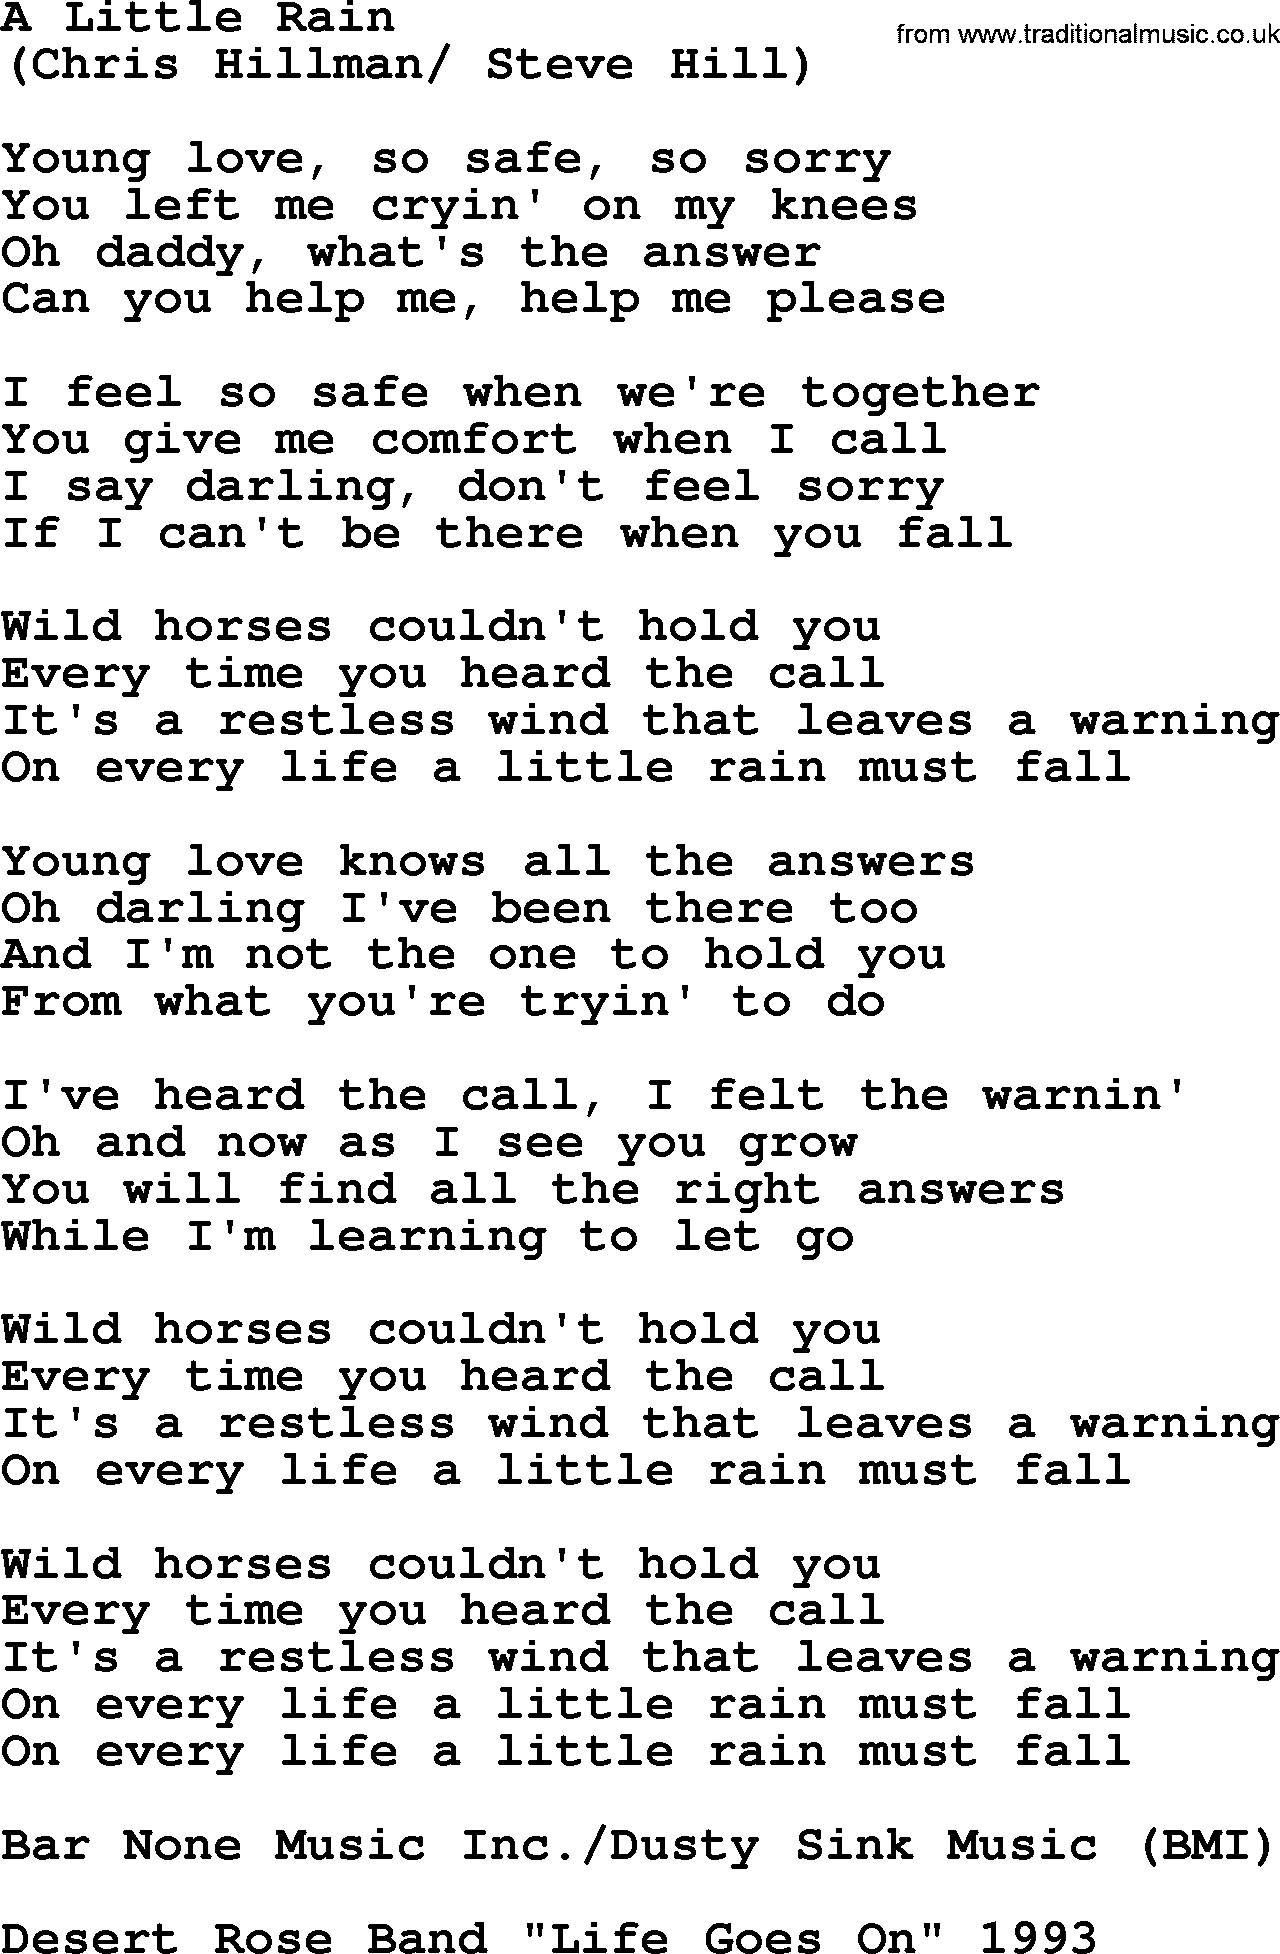 The Byrds song A Little Rain, lyrics